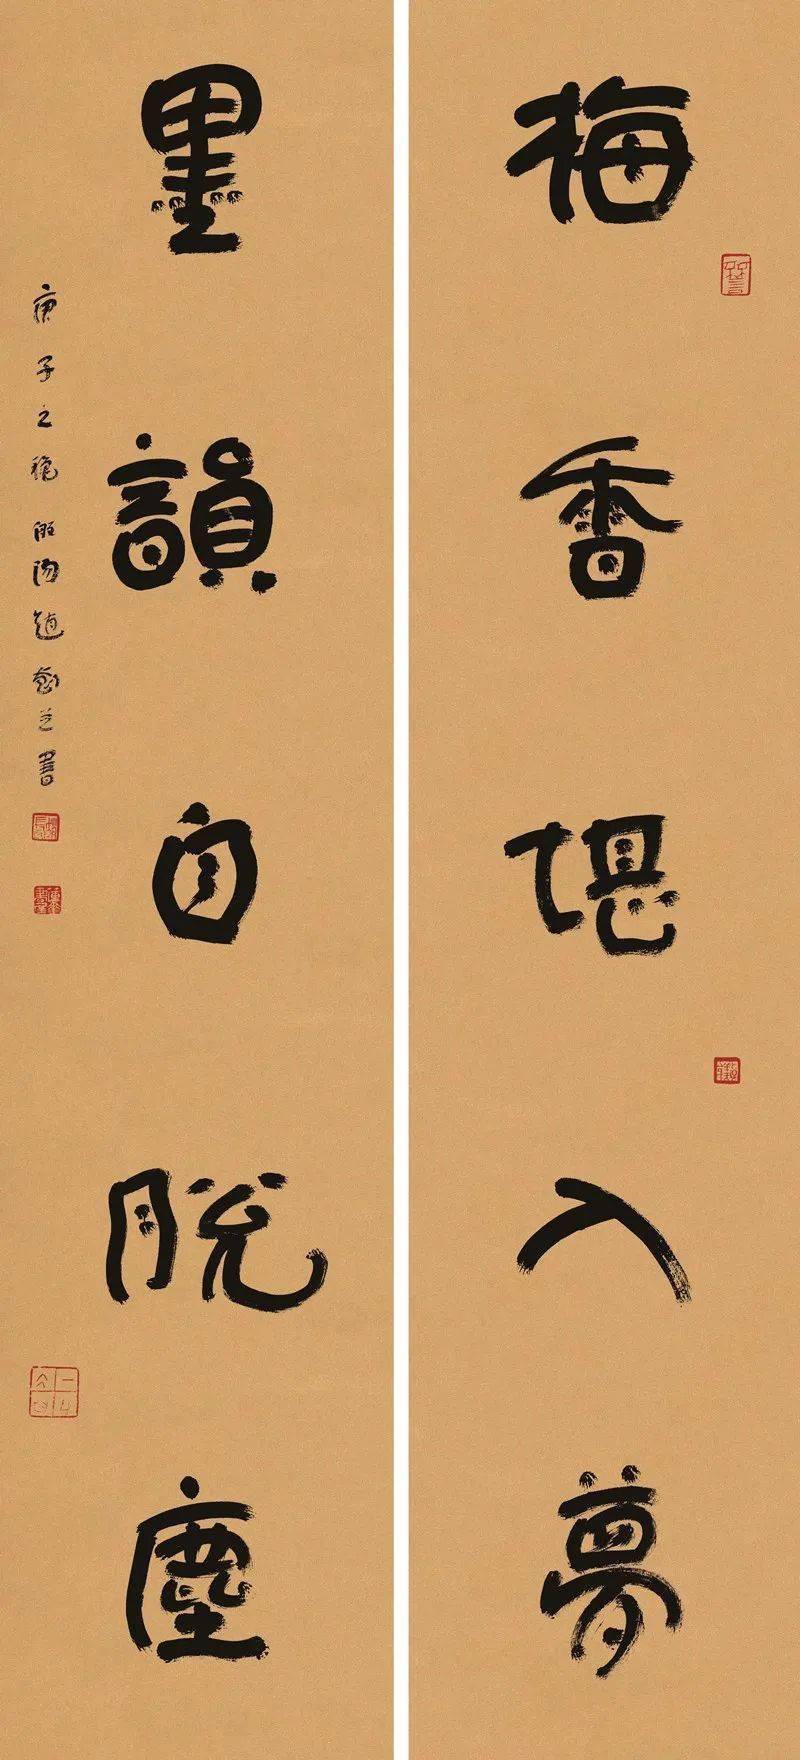 这位淄博老乡书法作品在北京梅兰芳纪念馆展出!来欣赏下